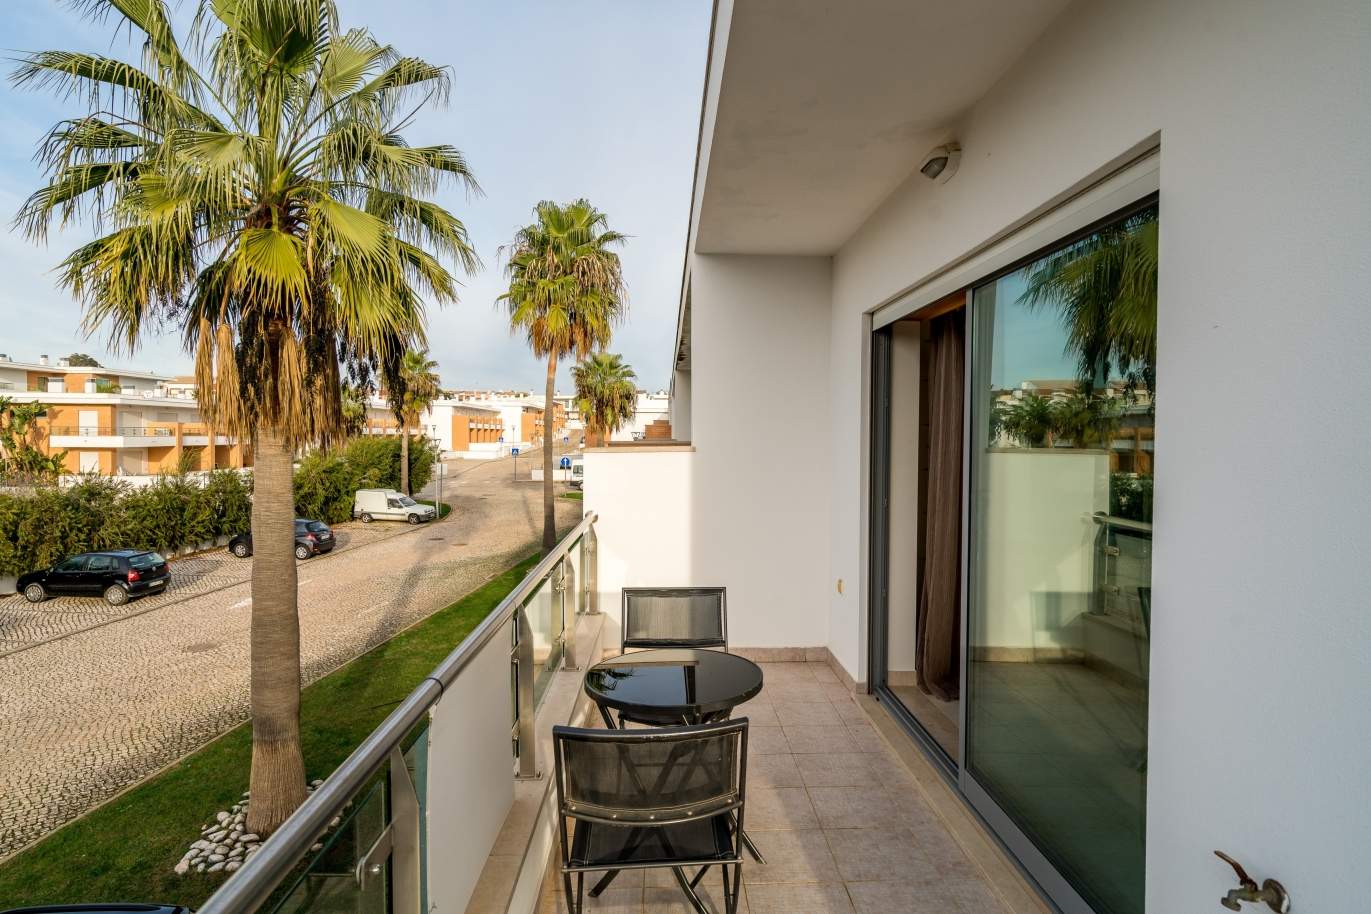 Sale of villa in private condominium in Albufeira, Algarve, Portugal_126893